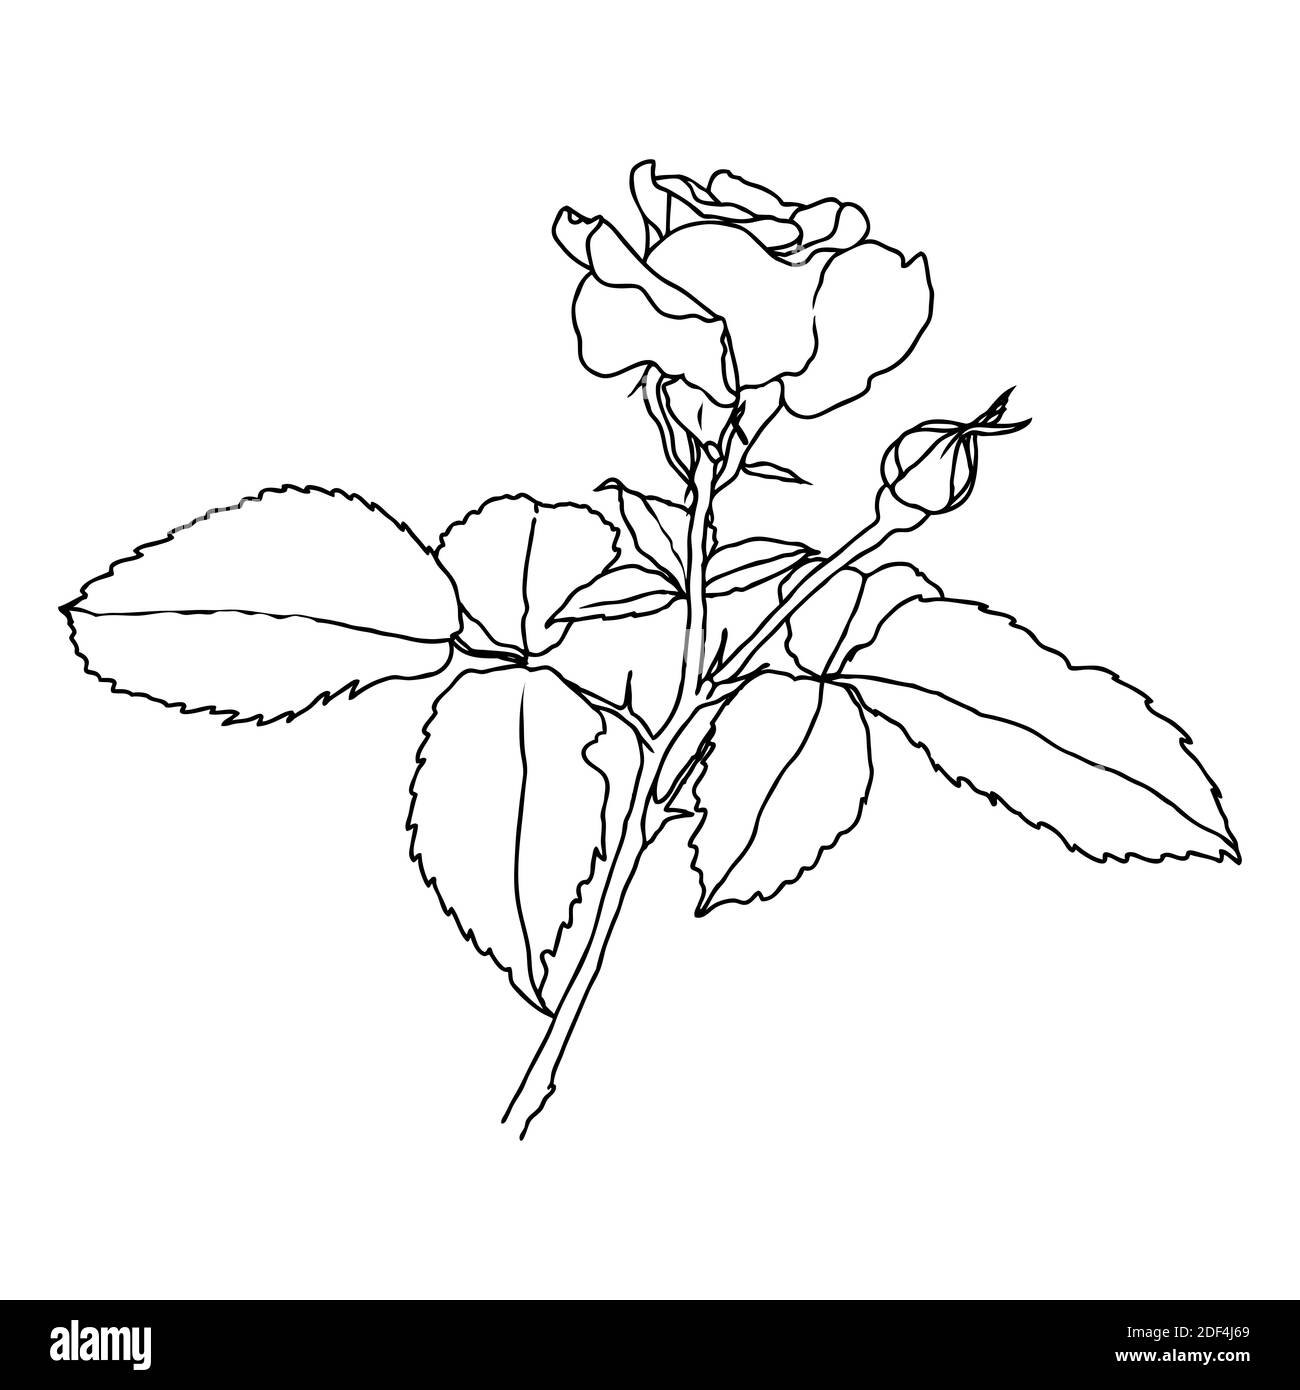 Eine Linienzeichnung von Rosenblüte isoliert auf weißem Hintergrund. Handgezeichnete Skizze, Vektorgrafik. Dekoratives Element für Tattoo, Grußkarte, Hochzeitseinladung, Malbuch Stock Vektor